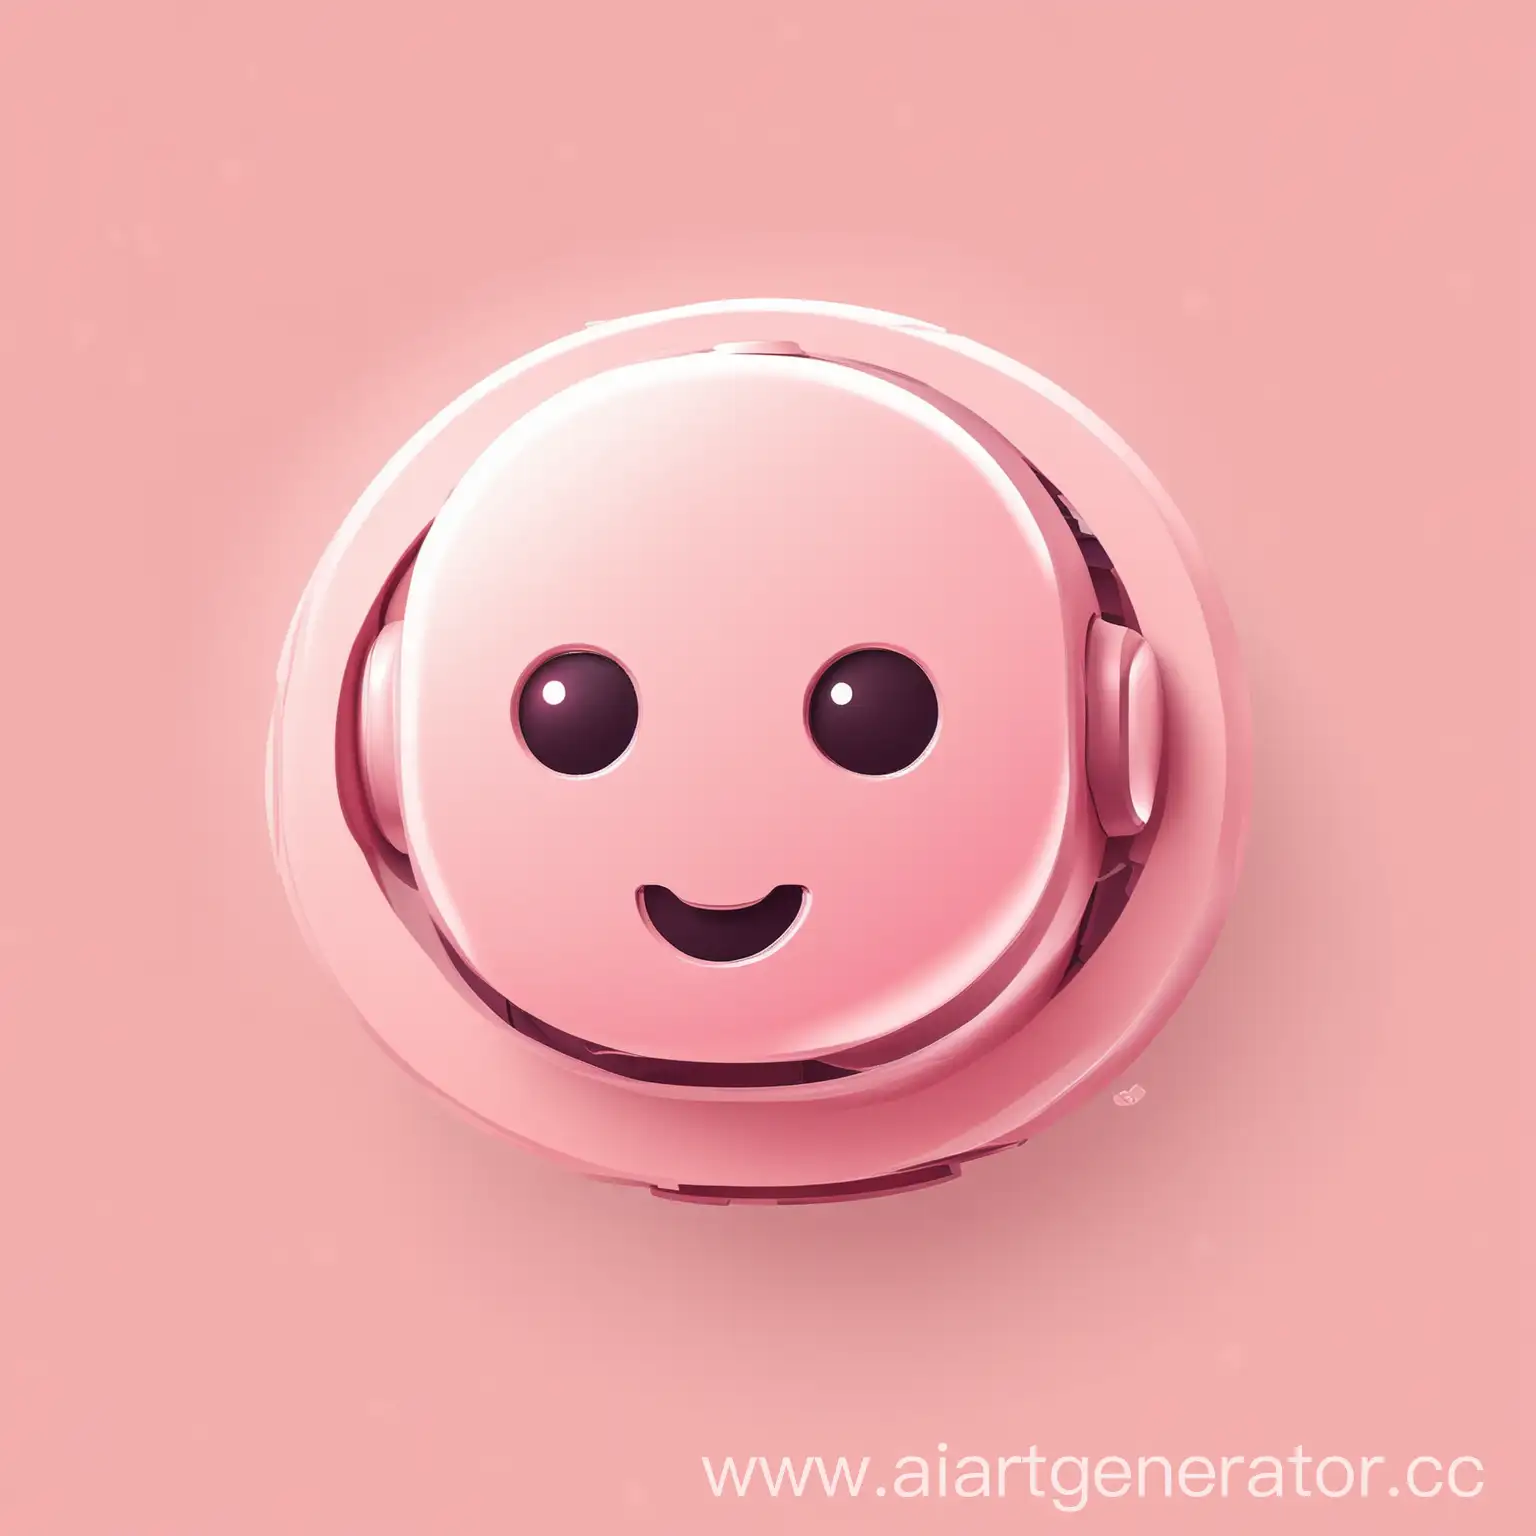 сгенерируй логотип для чат-бота, помогающего персонализировать фанфики путем замены персональной ифнормации главного персонажа на данные пользователя. Используй современный стильный дизайн и розовый нежный цвет